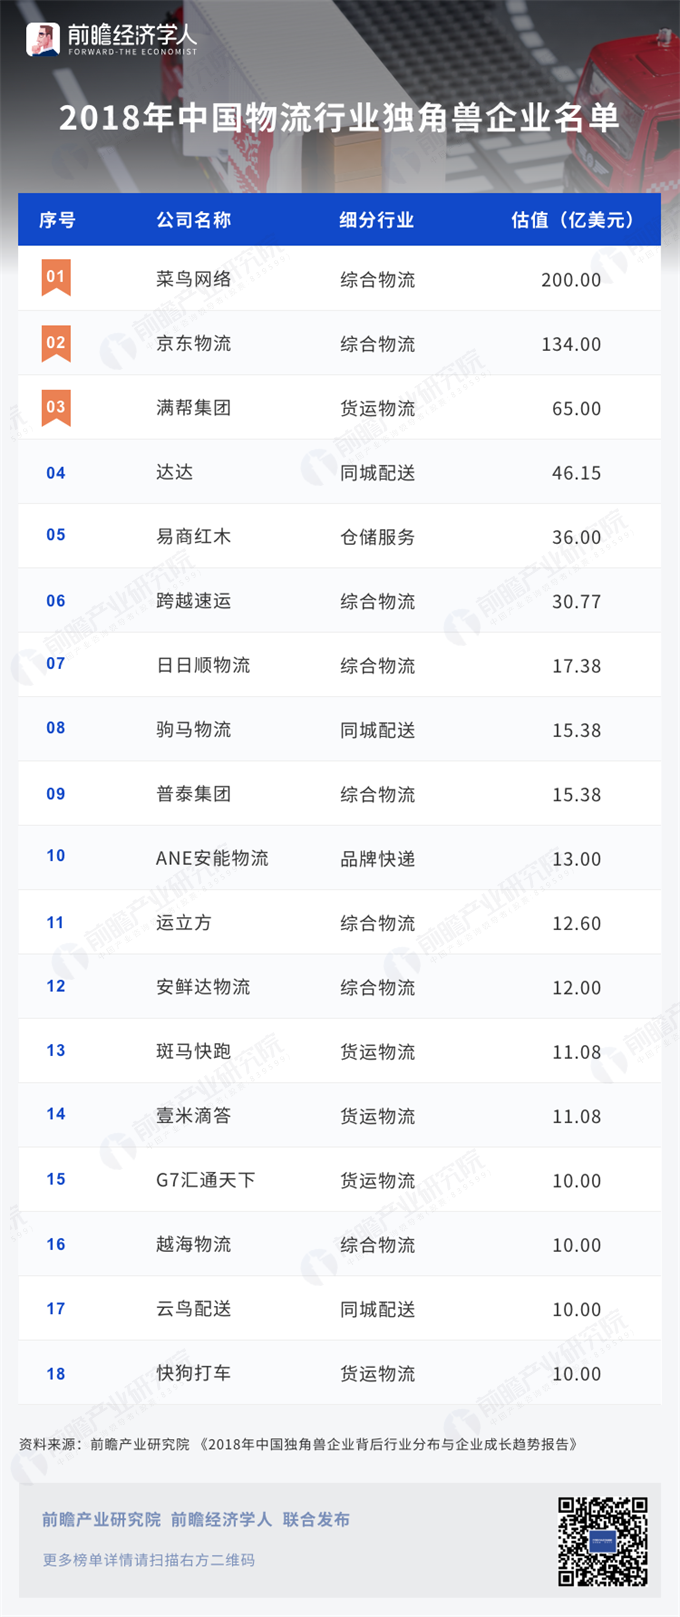 2018中国物流行业独角兽企业名单